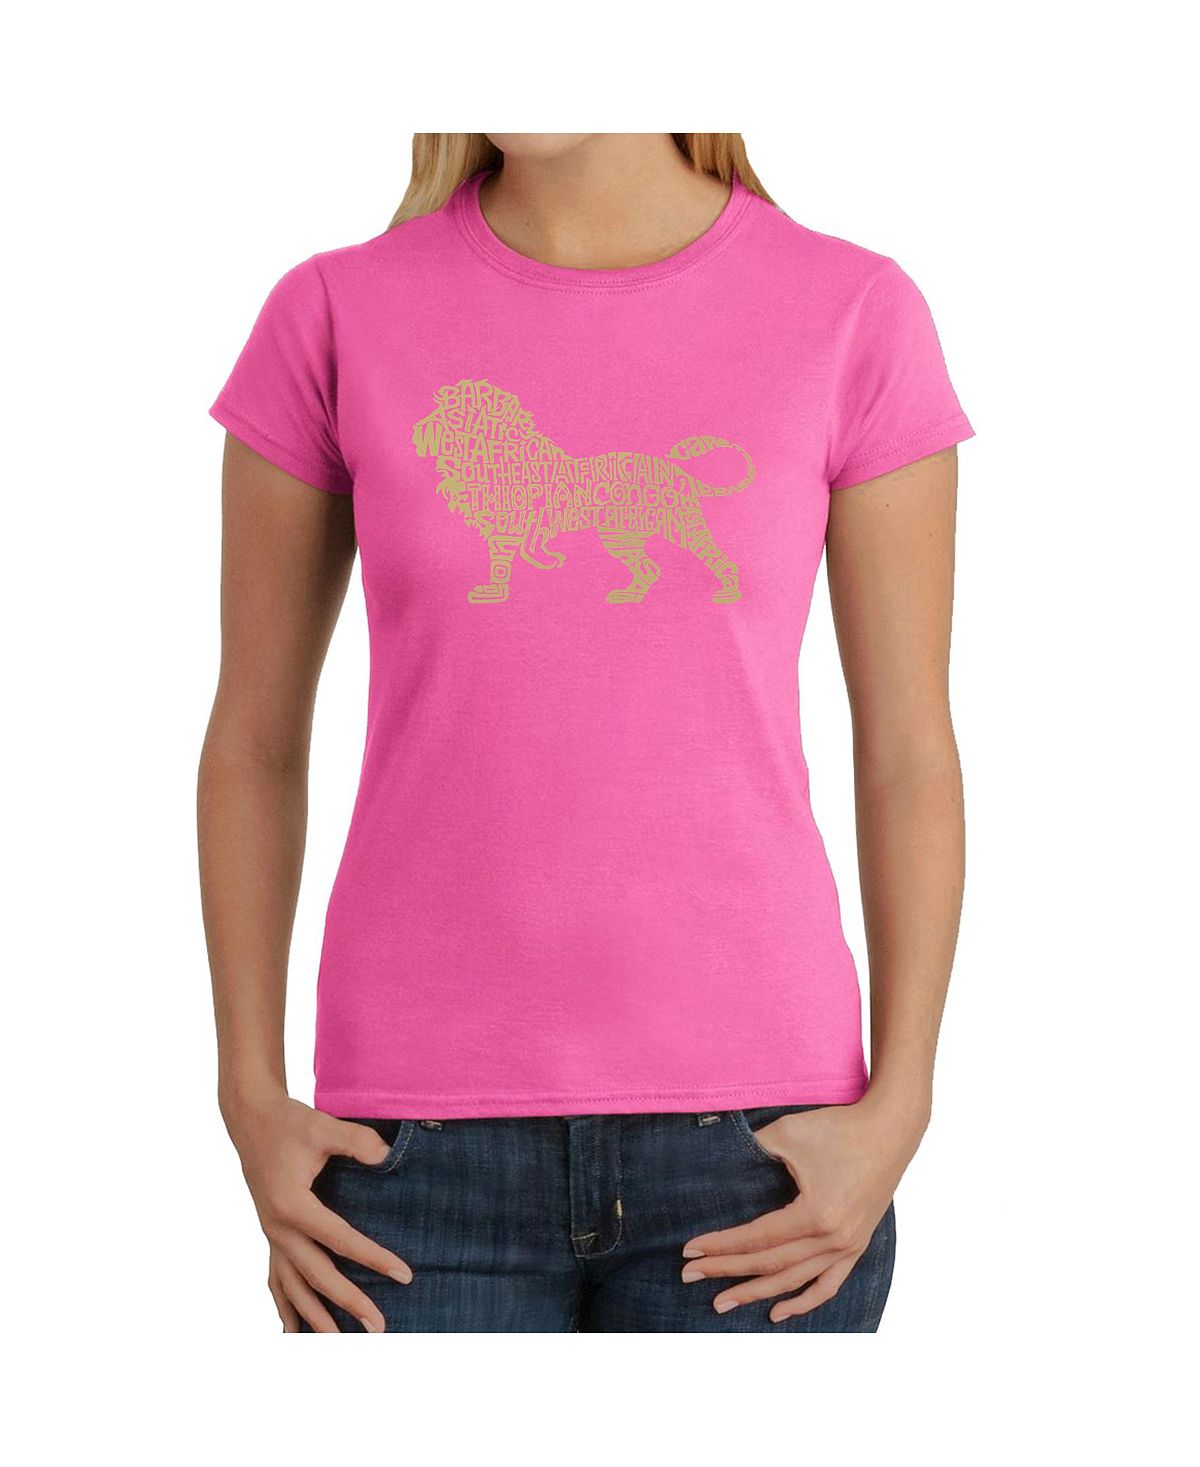 Женская футболка word art - лев LA Pop Art, розовый